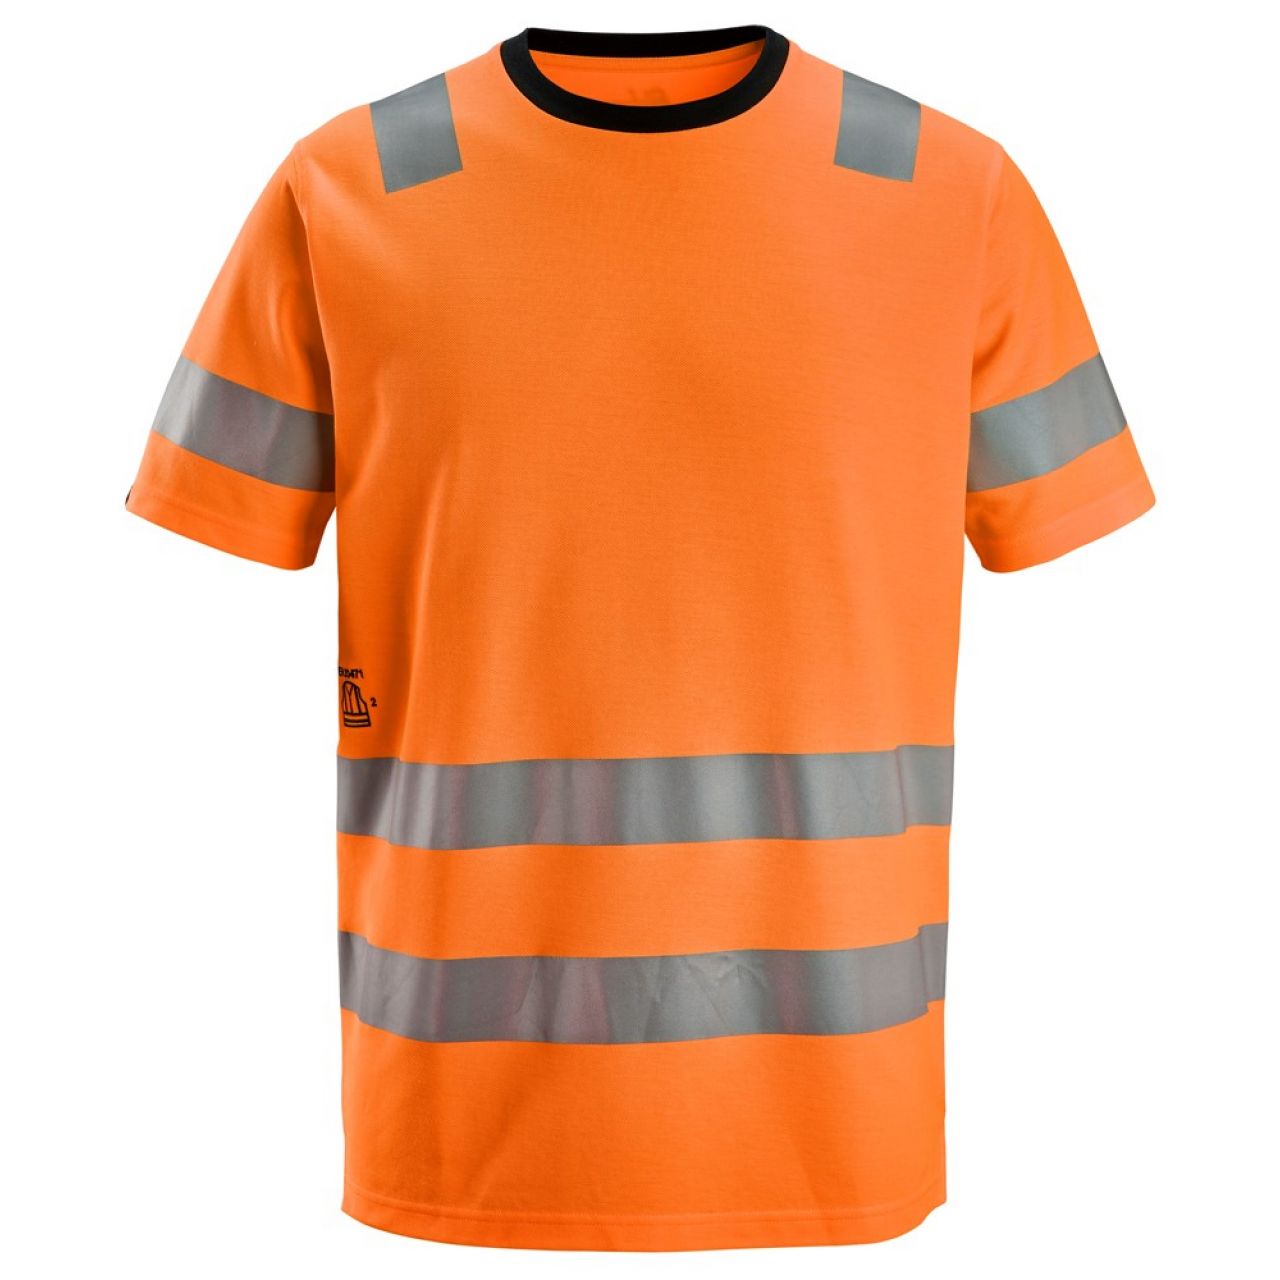 2536 Camiseta de manga corta de alta visibilidad clase 2 naranja talla XL